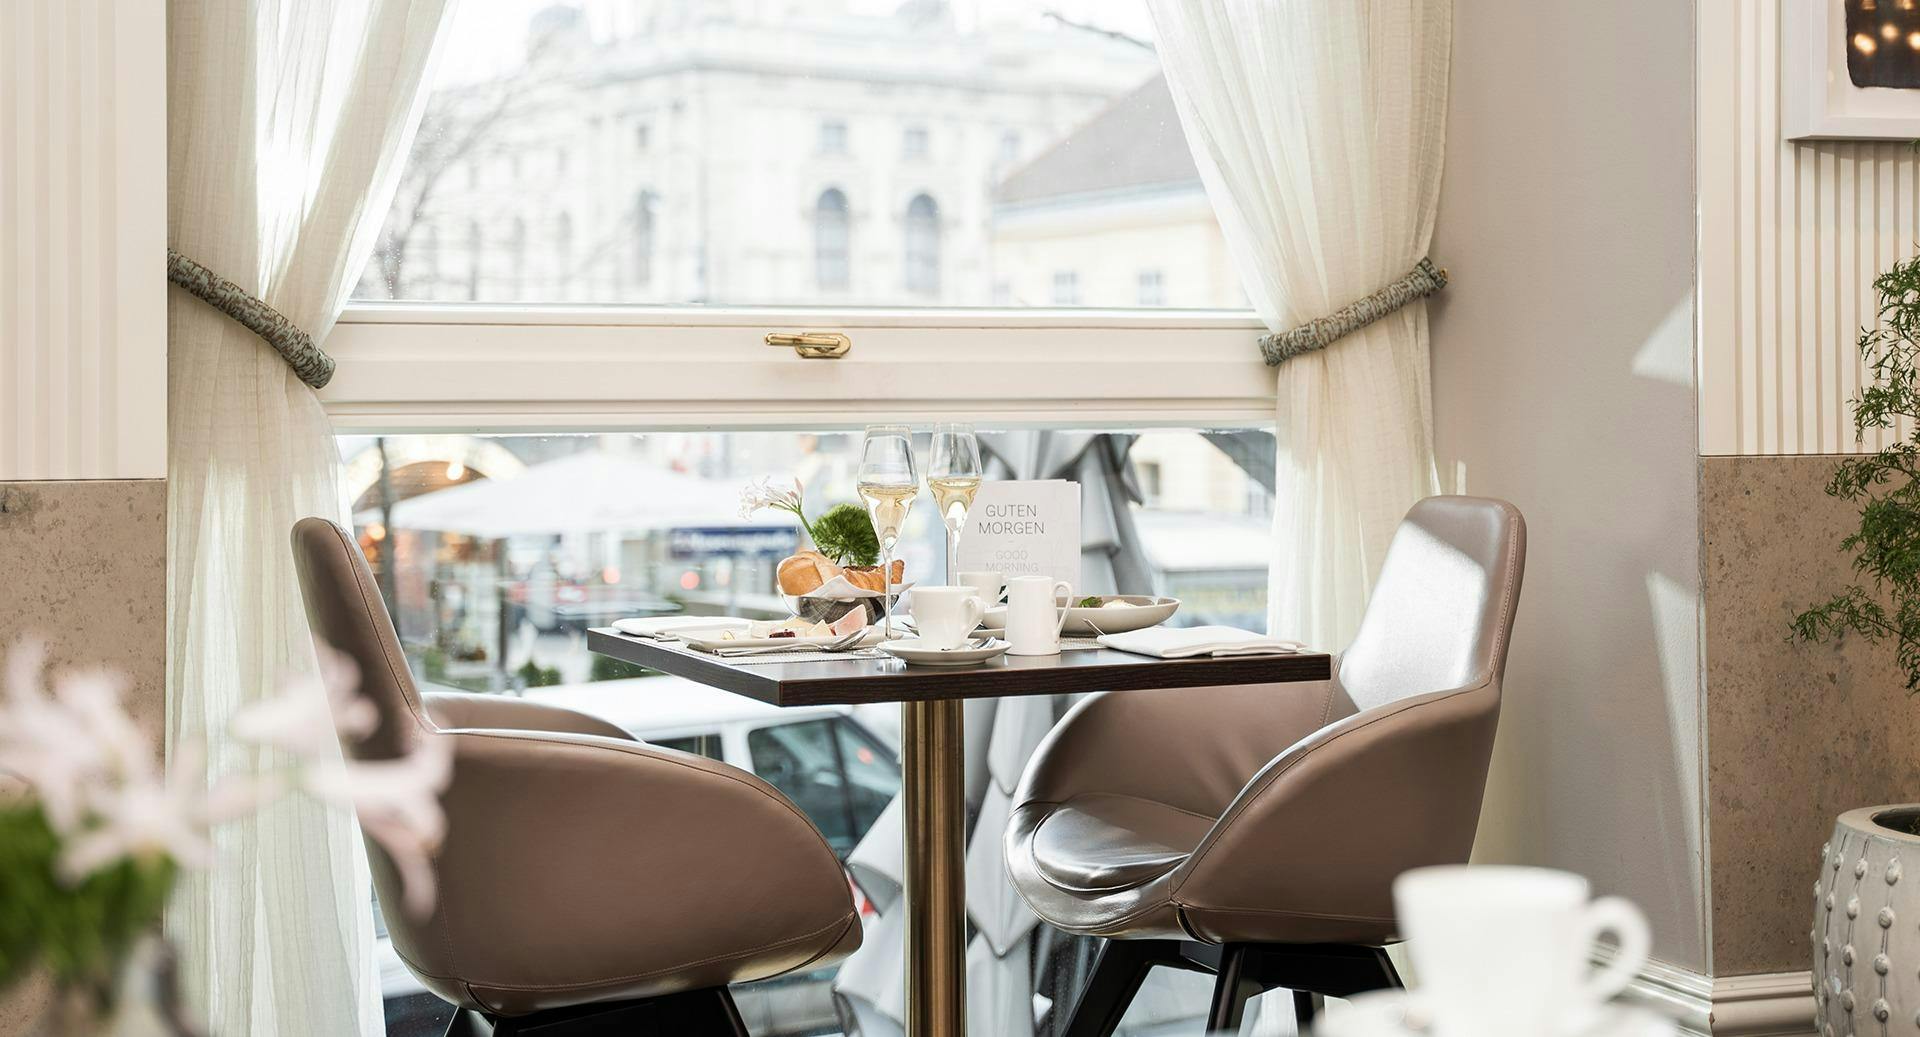 Photo of restaurant Veranda Brasserie & Bar in 7. District, Vienna